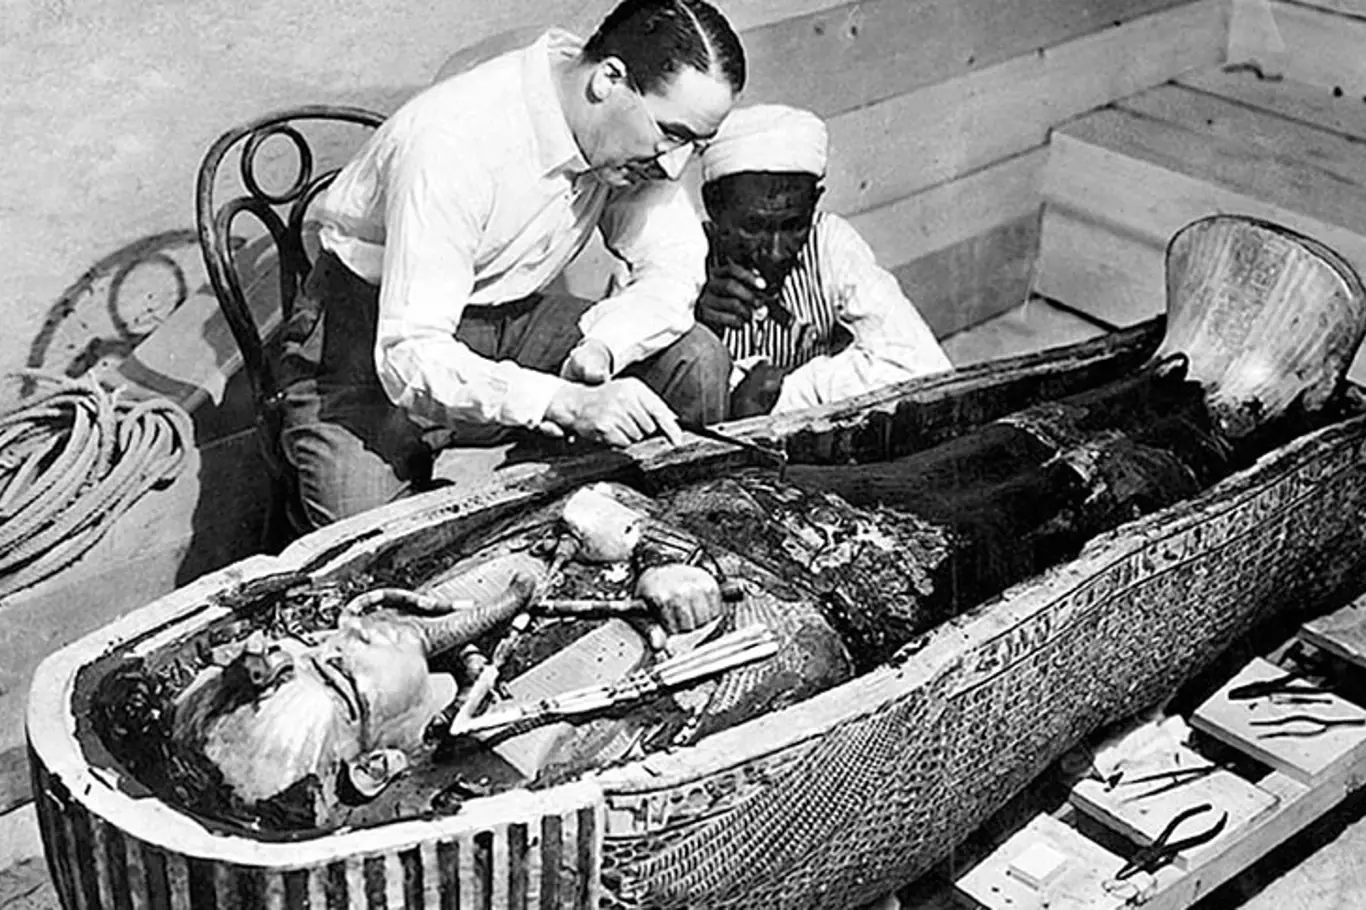 Tutanchamonova hrobka. Anglický archeolog Howard Carter objevil roku 1922 v Údolí králů v Egyptě hrobku faraona Tutanchamona (1333–1323 př. n. l.). Bohatství pokladu výrazně posunulo představy o pohřebních výbavách faraonů.